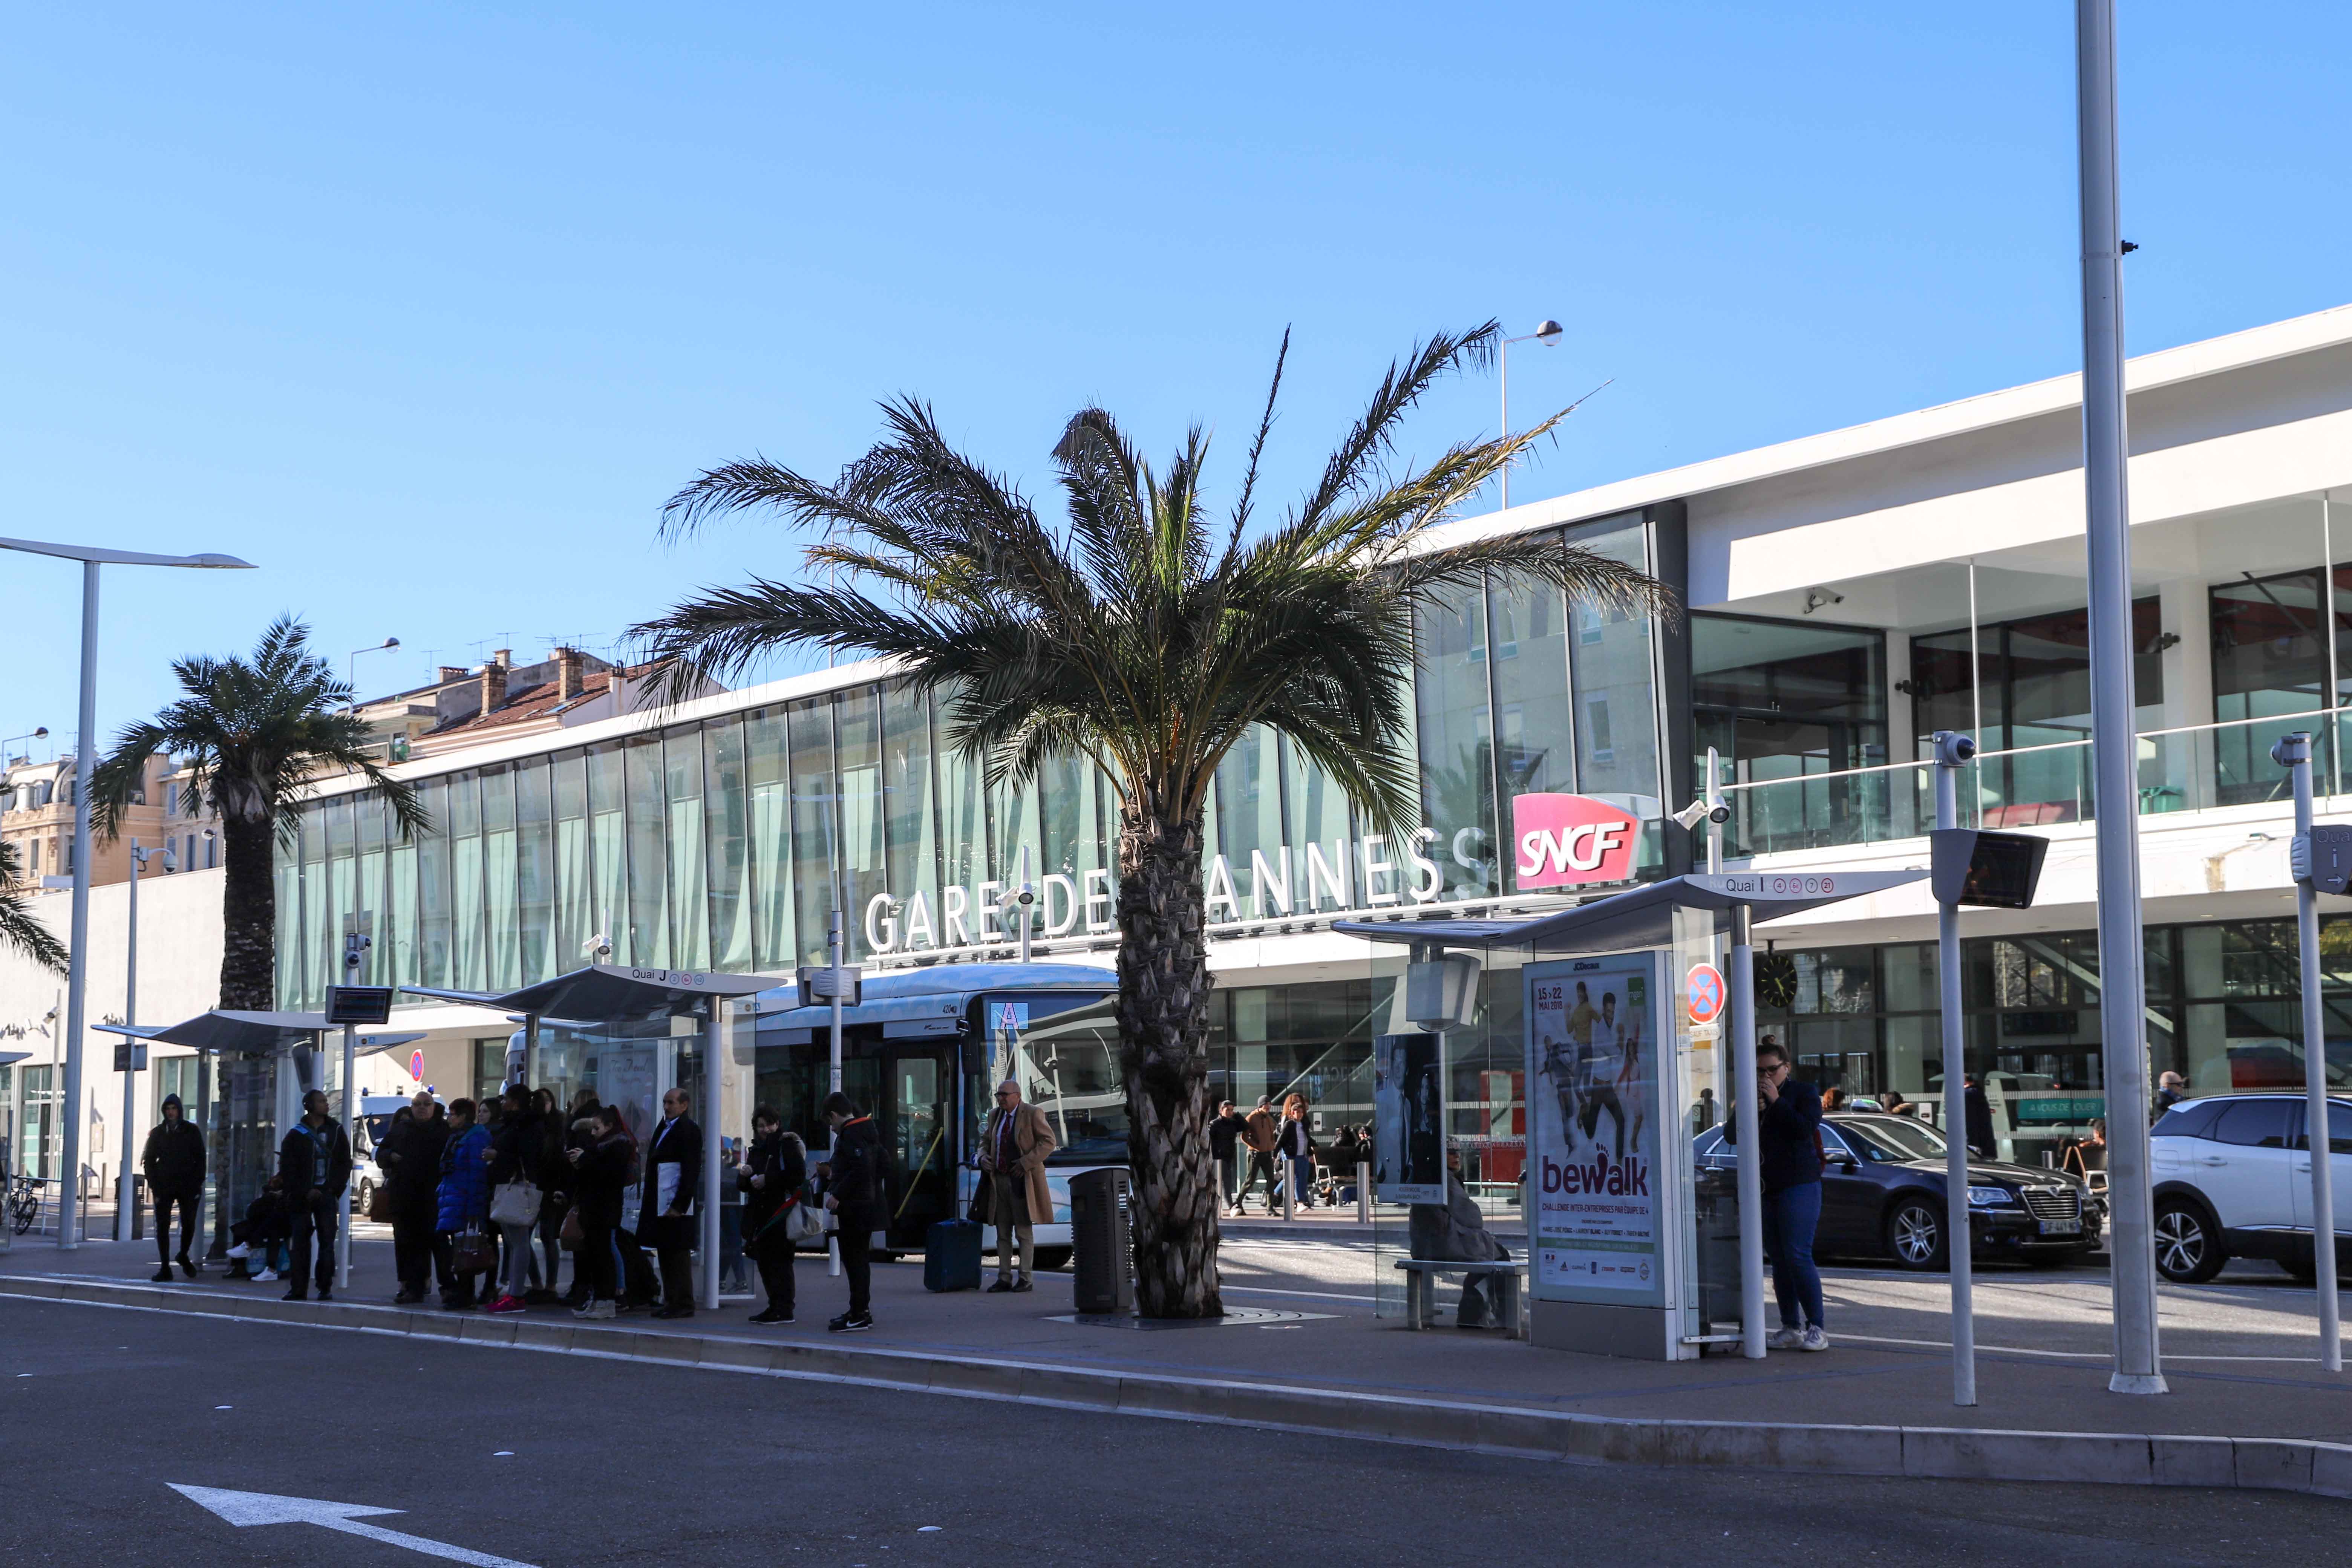 GAre de Cannes - Cannes train station